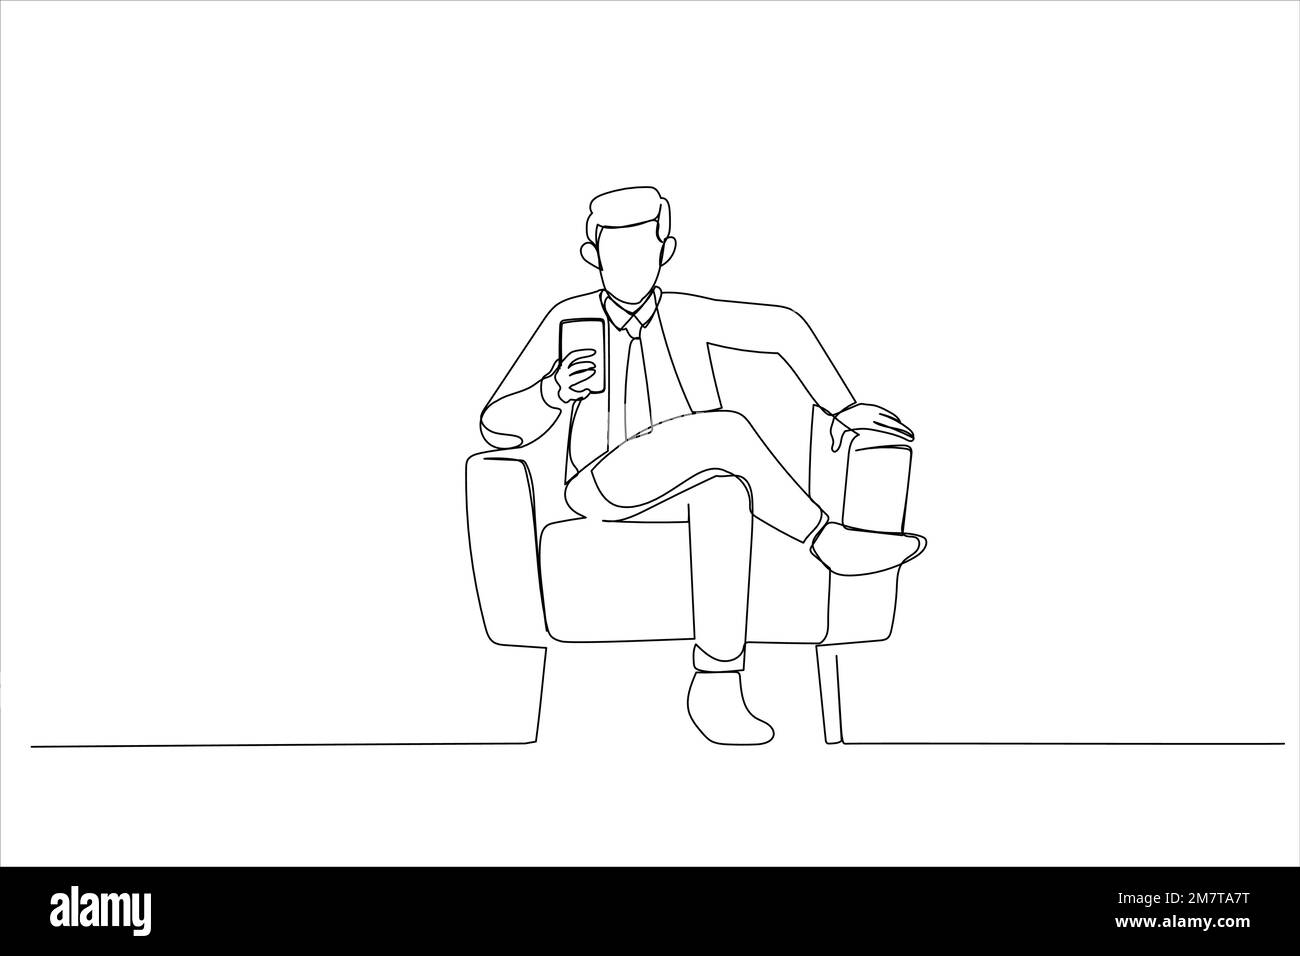 Illustration d'un homme utilisant un smartphone annonçant une nouvelle application mobile, textant en ligne assis dans un fauteuil. Un style d'art sur une ligne Illustration de Vecteur